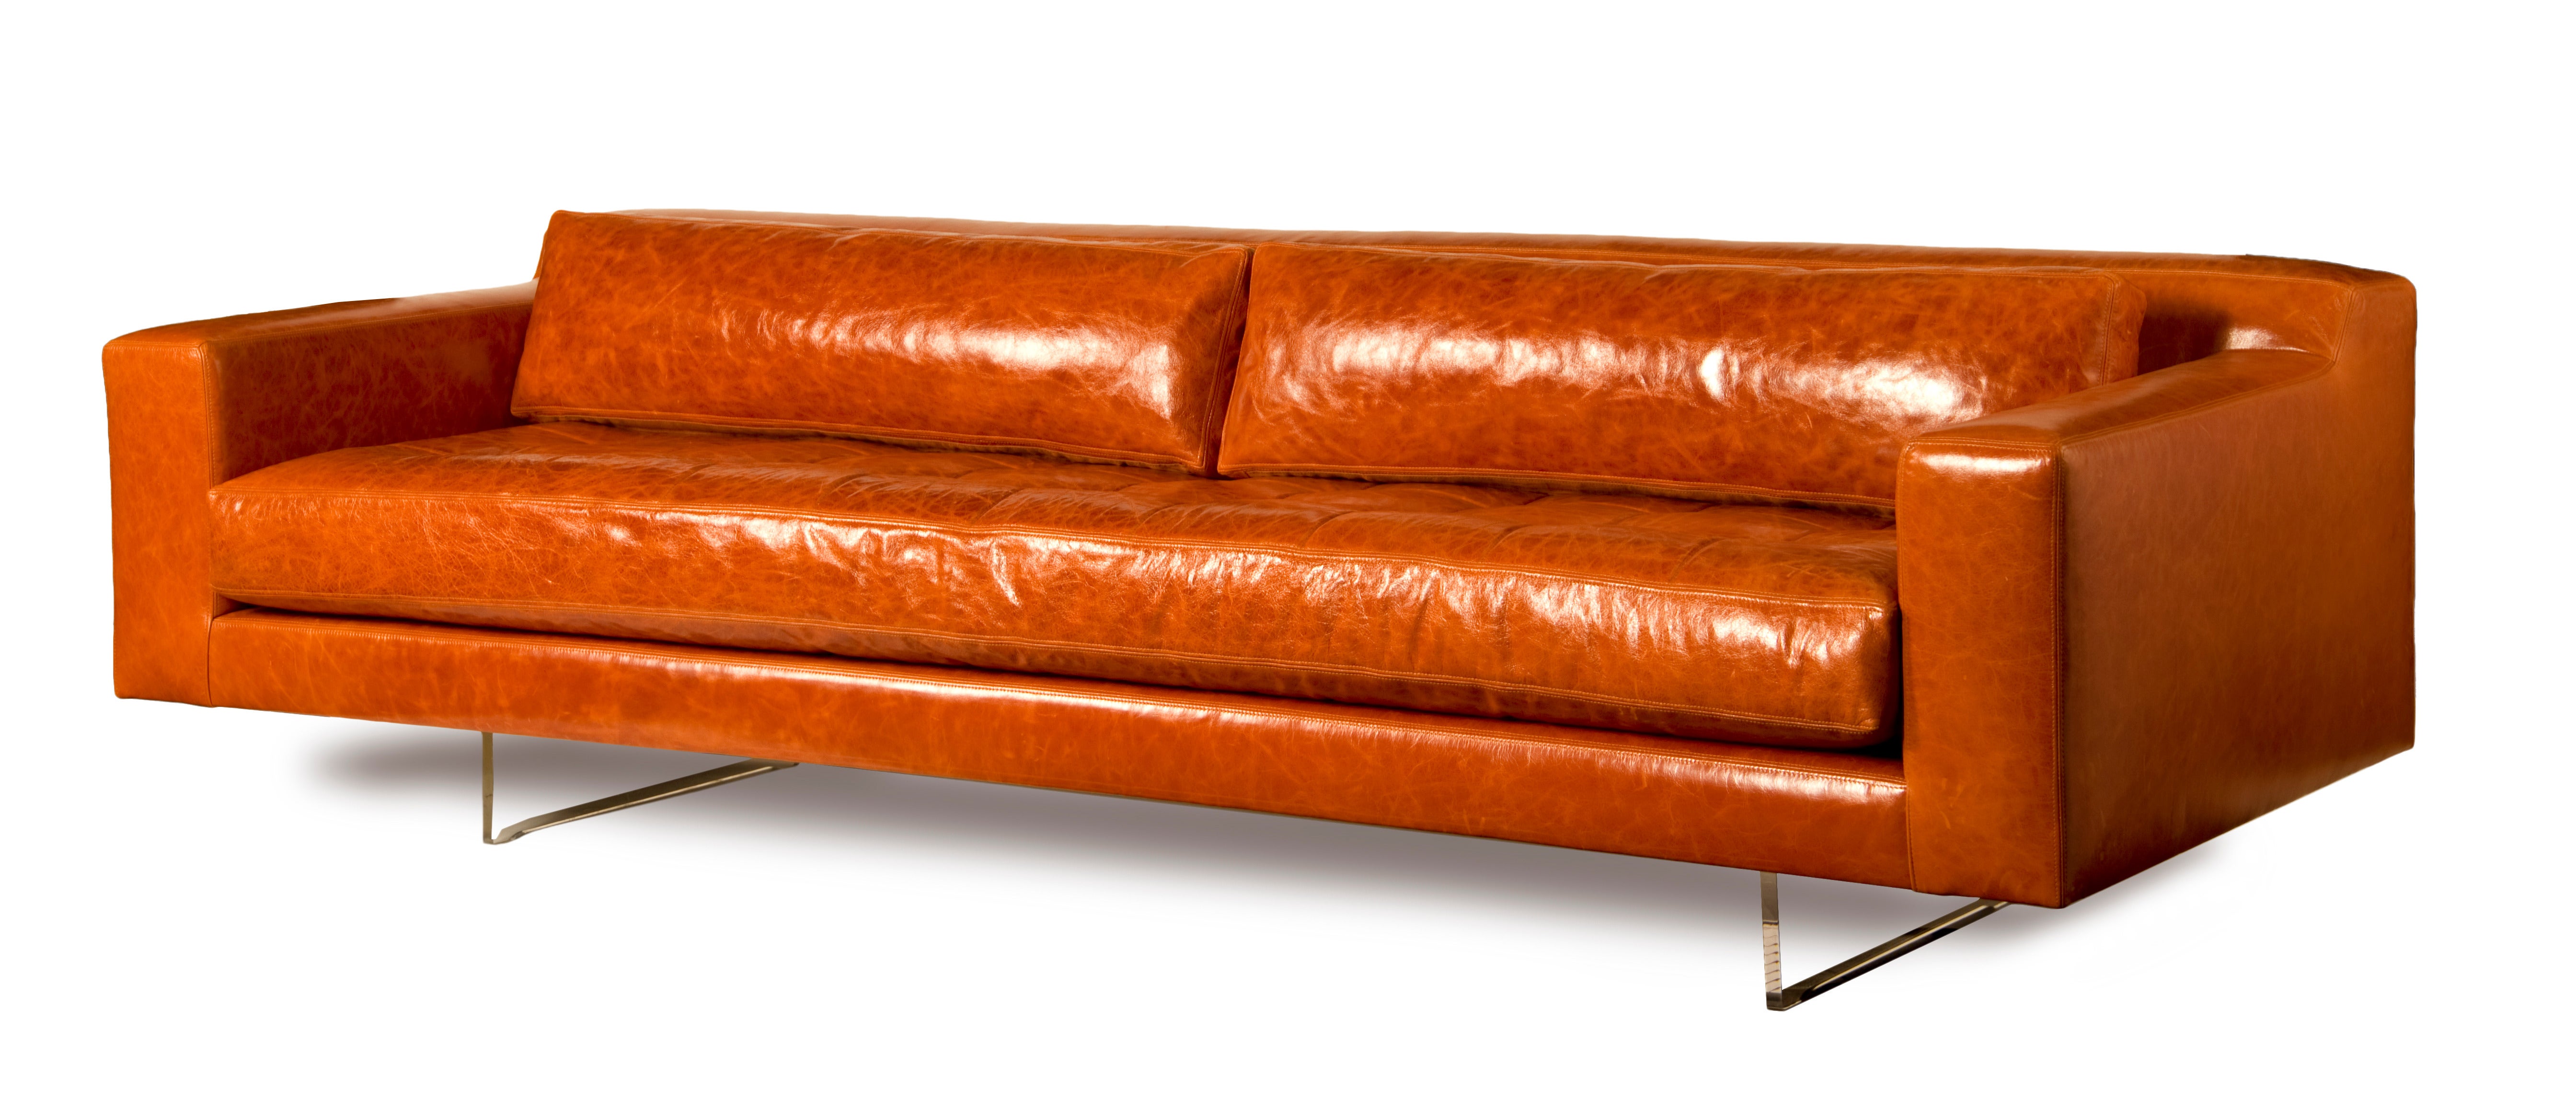 Vladimir Kagan Rectangle Sofa